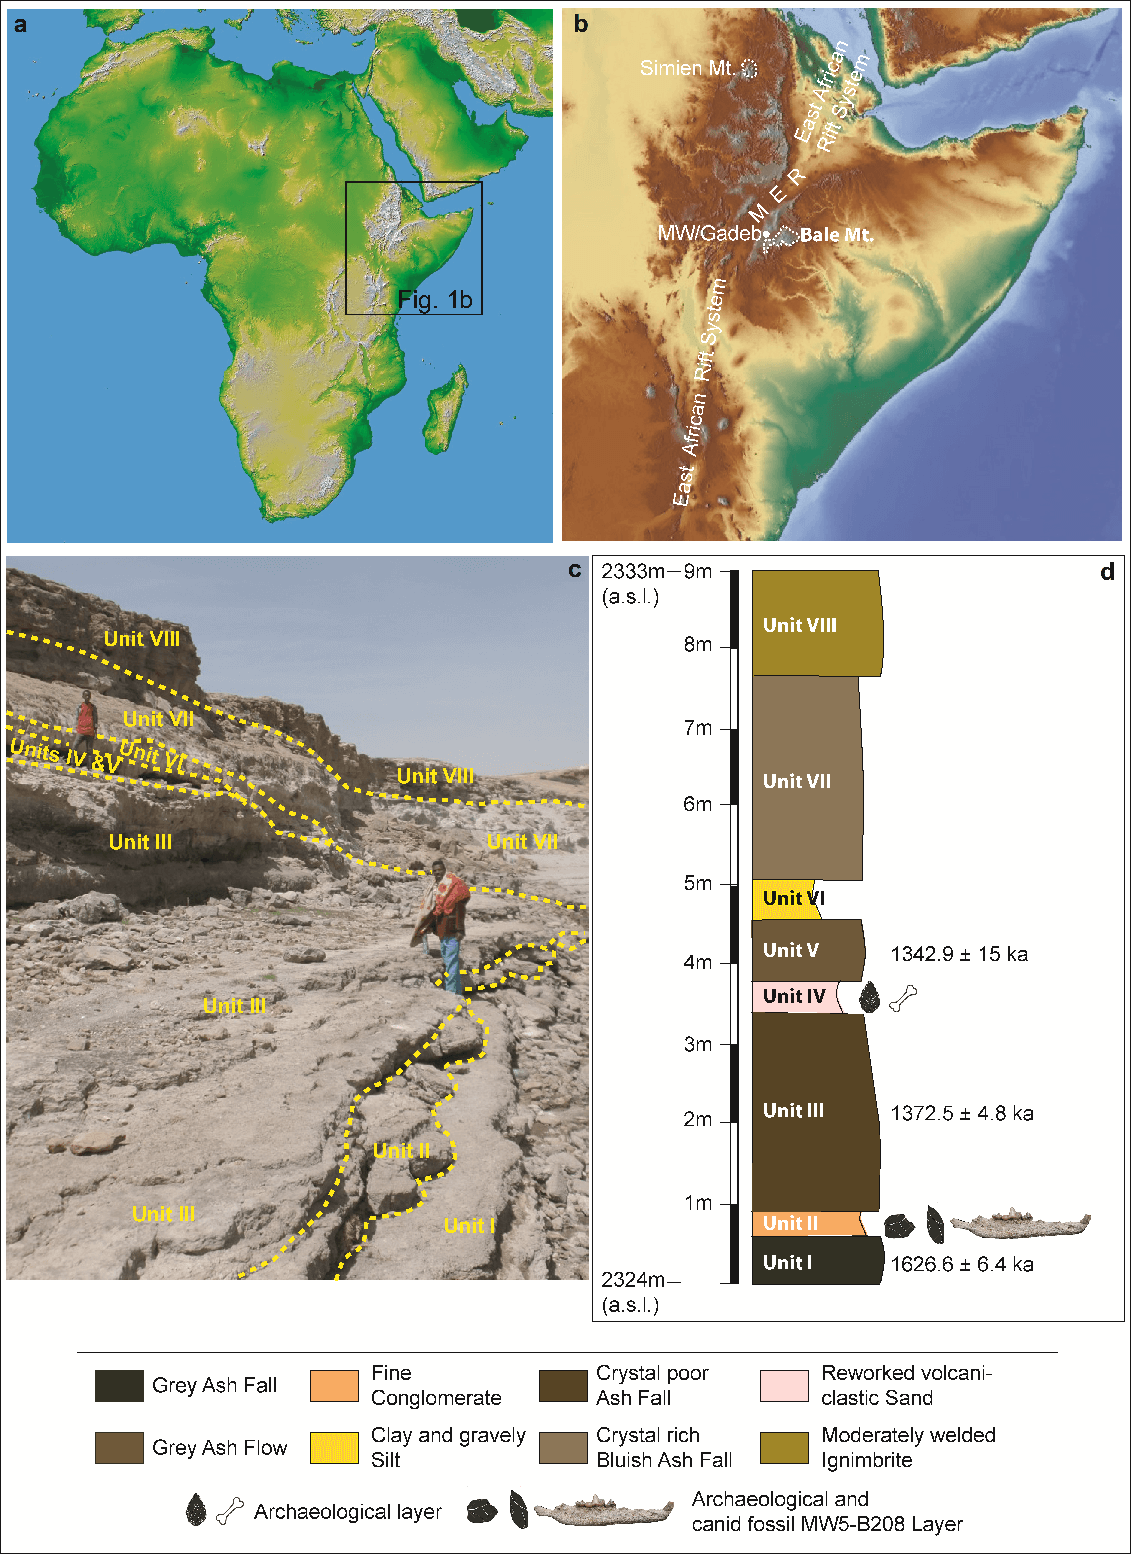 למעלה: משמאל - מפת מיקום באפריקה; מימין – באתיופיה קרדיט: Relief map from Natural Earth (public domain) http://www.naturalearthdata.com למטה: משמאל - צילום של אזור הממצא (קרדיט: טגנו גוסה); מימין: עמודת השכבות הגיאולוגיות וגיליהן במליוני שנה (קרדיט: אספאווסן אסרט)